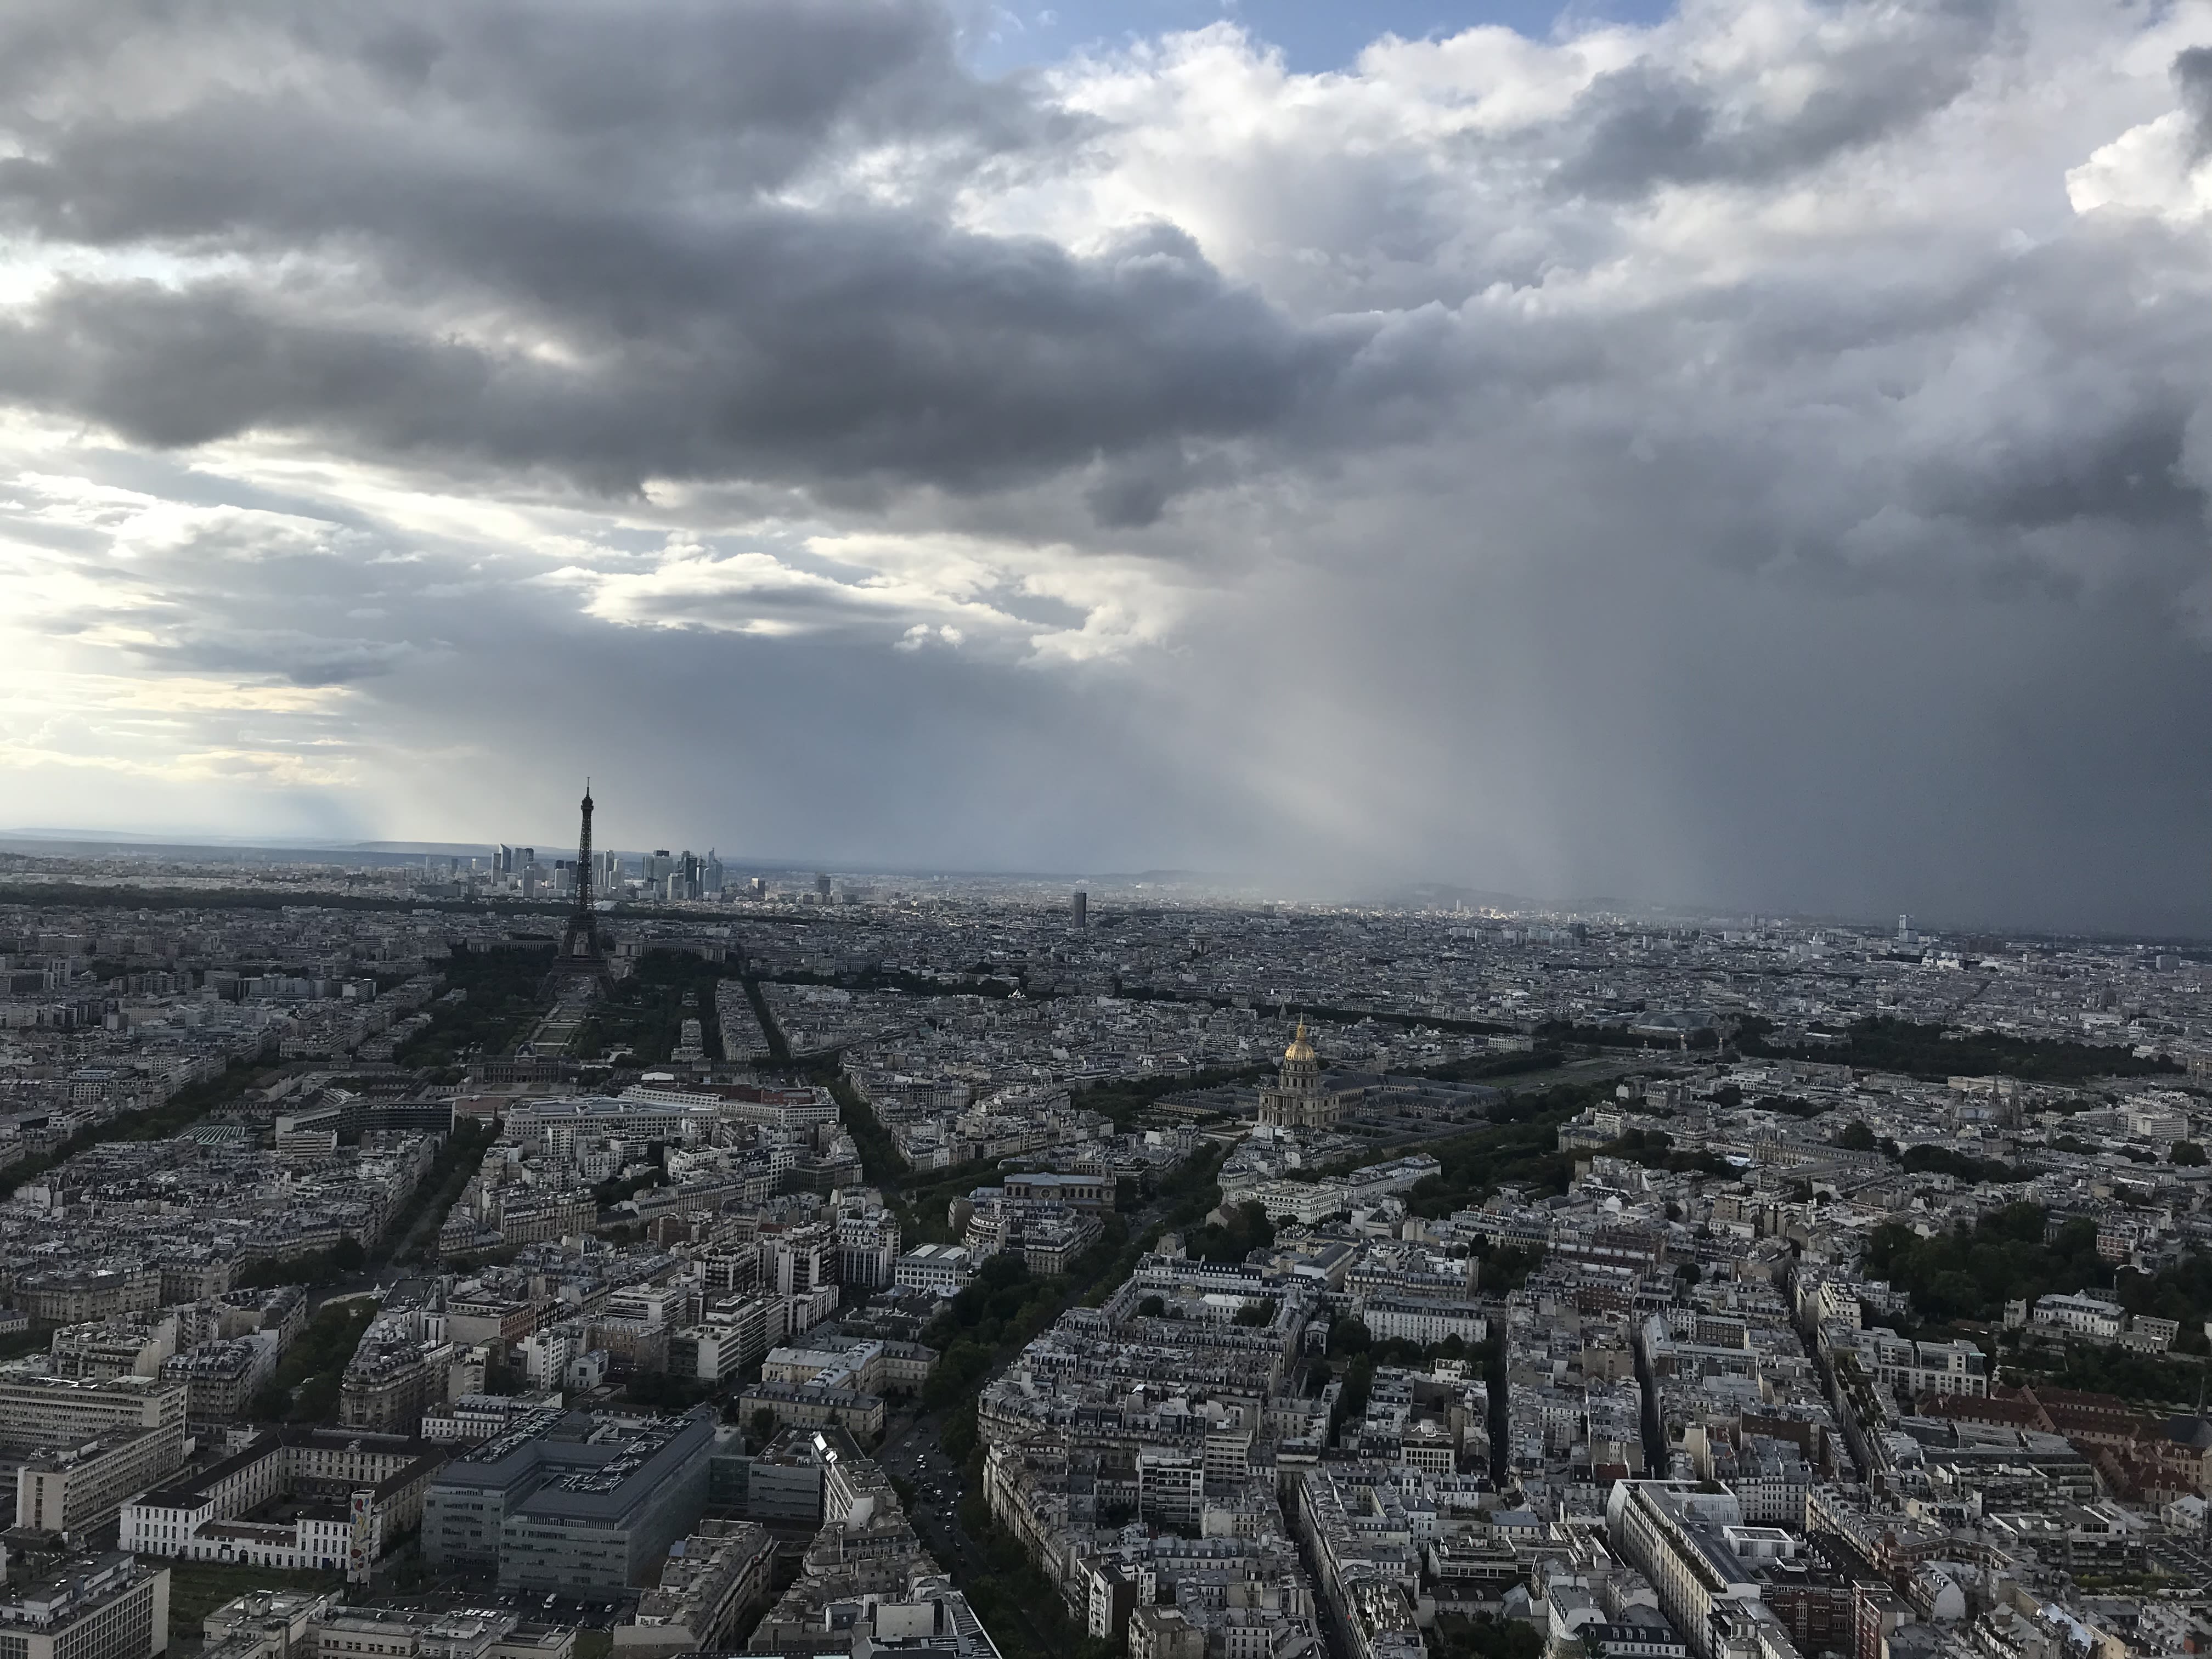 Wolken en een bui in Parijs
Jesper van Delden